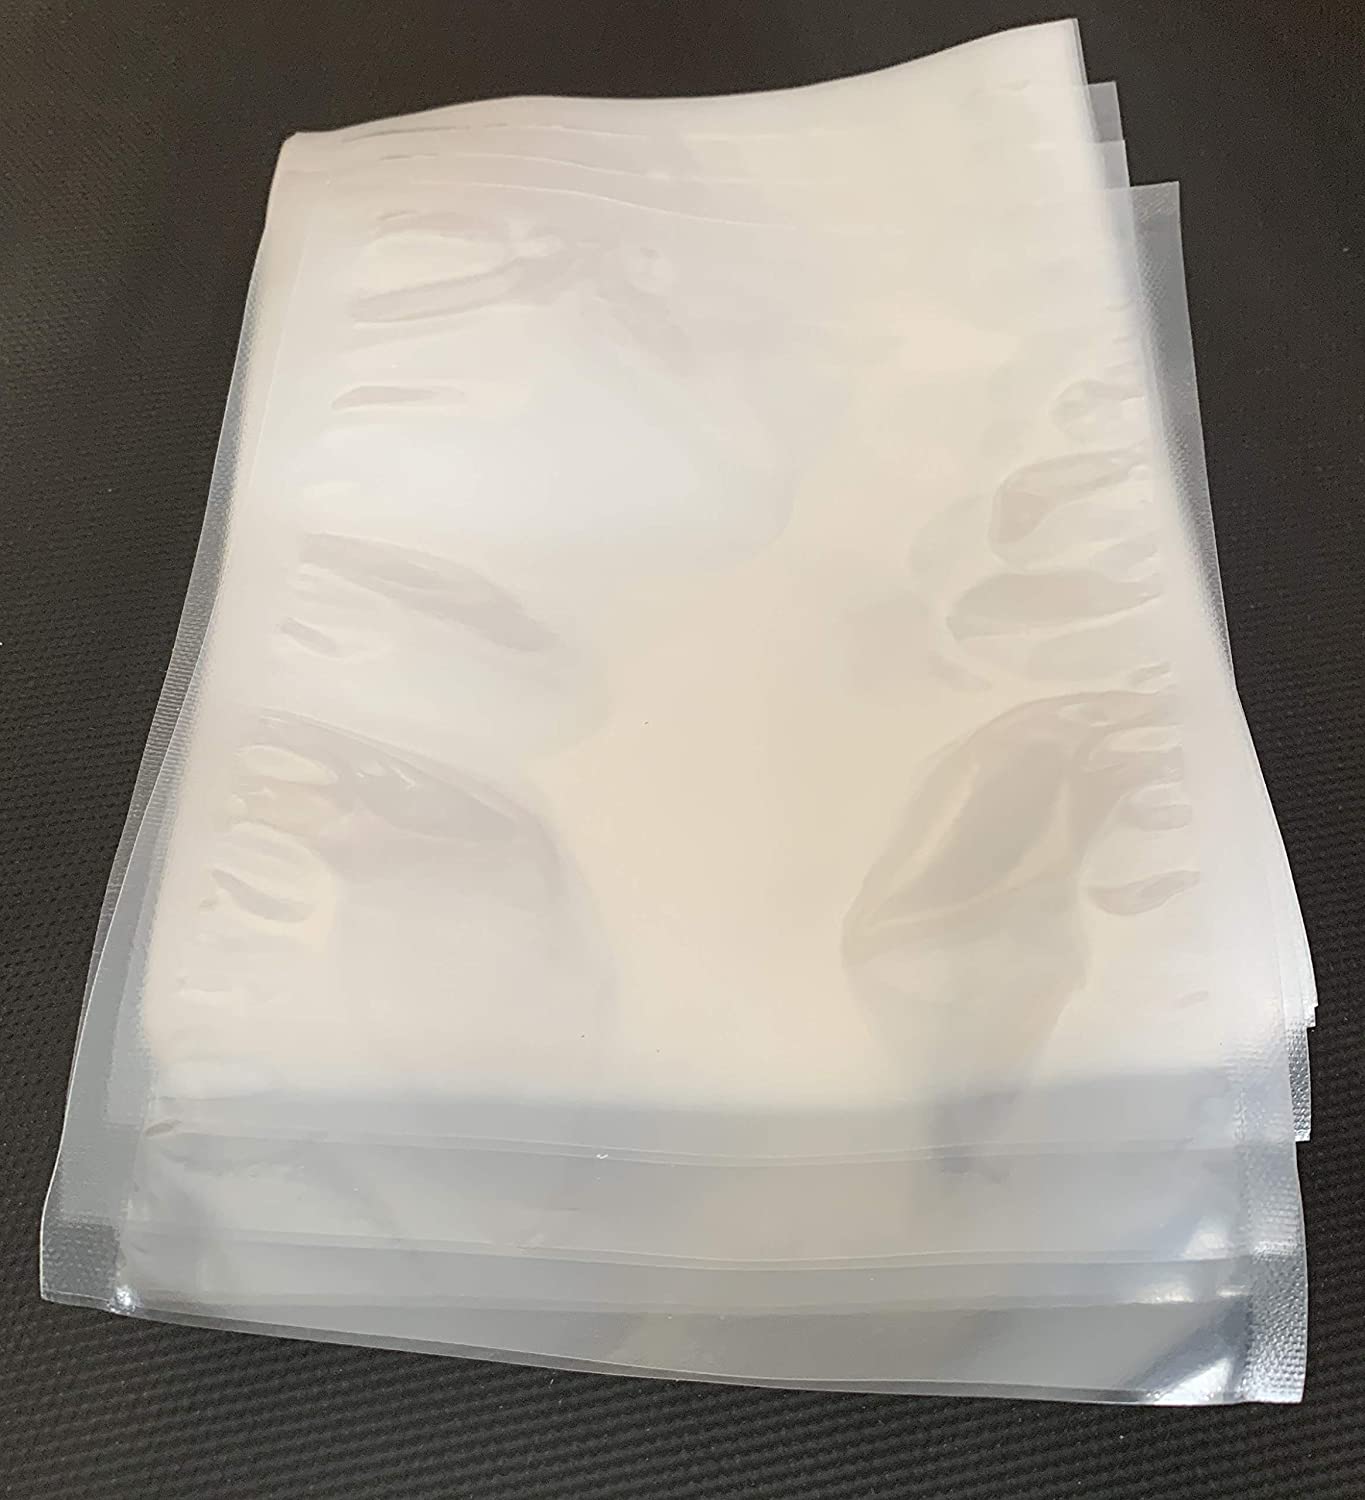 Vakuumbeutel Pack of 100 Vacuum Bags Sealing Edge Bags 90 mµ Transparent Sealing Bags (200 x 270 mm)